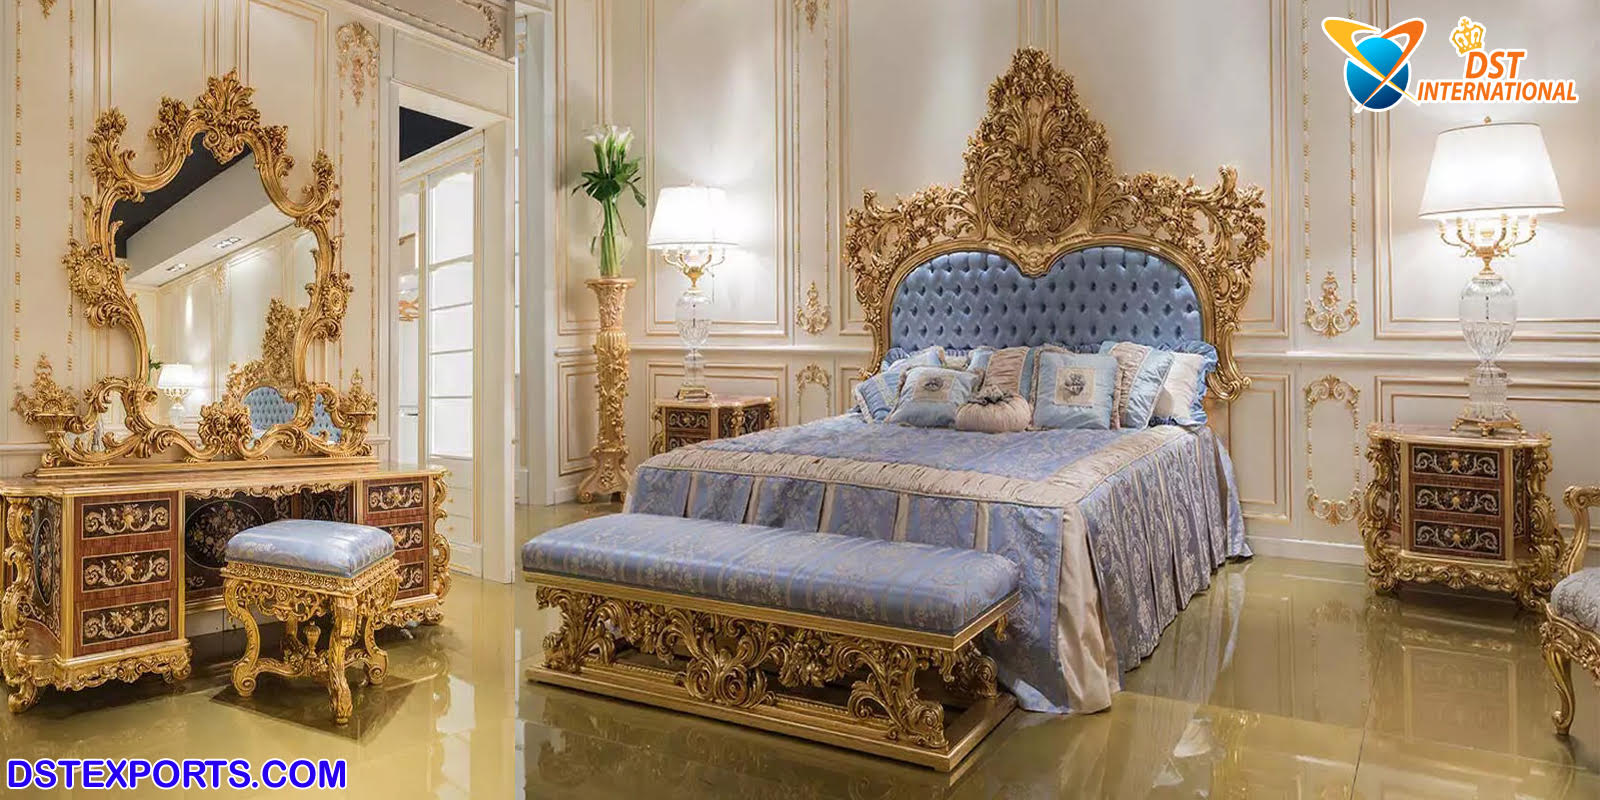 Royal King Size Bedroom Furniture Set, Royal King Bed Size